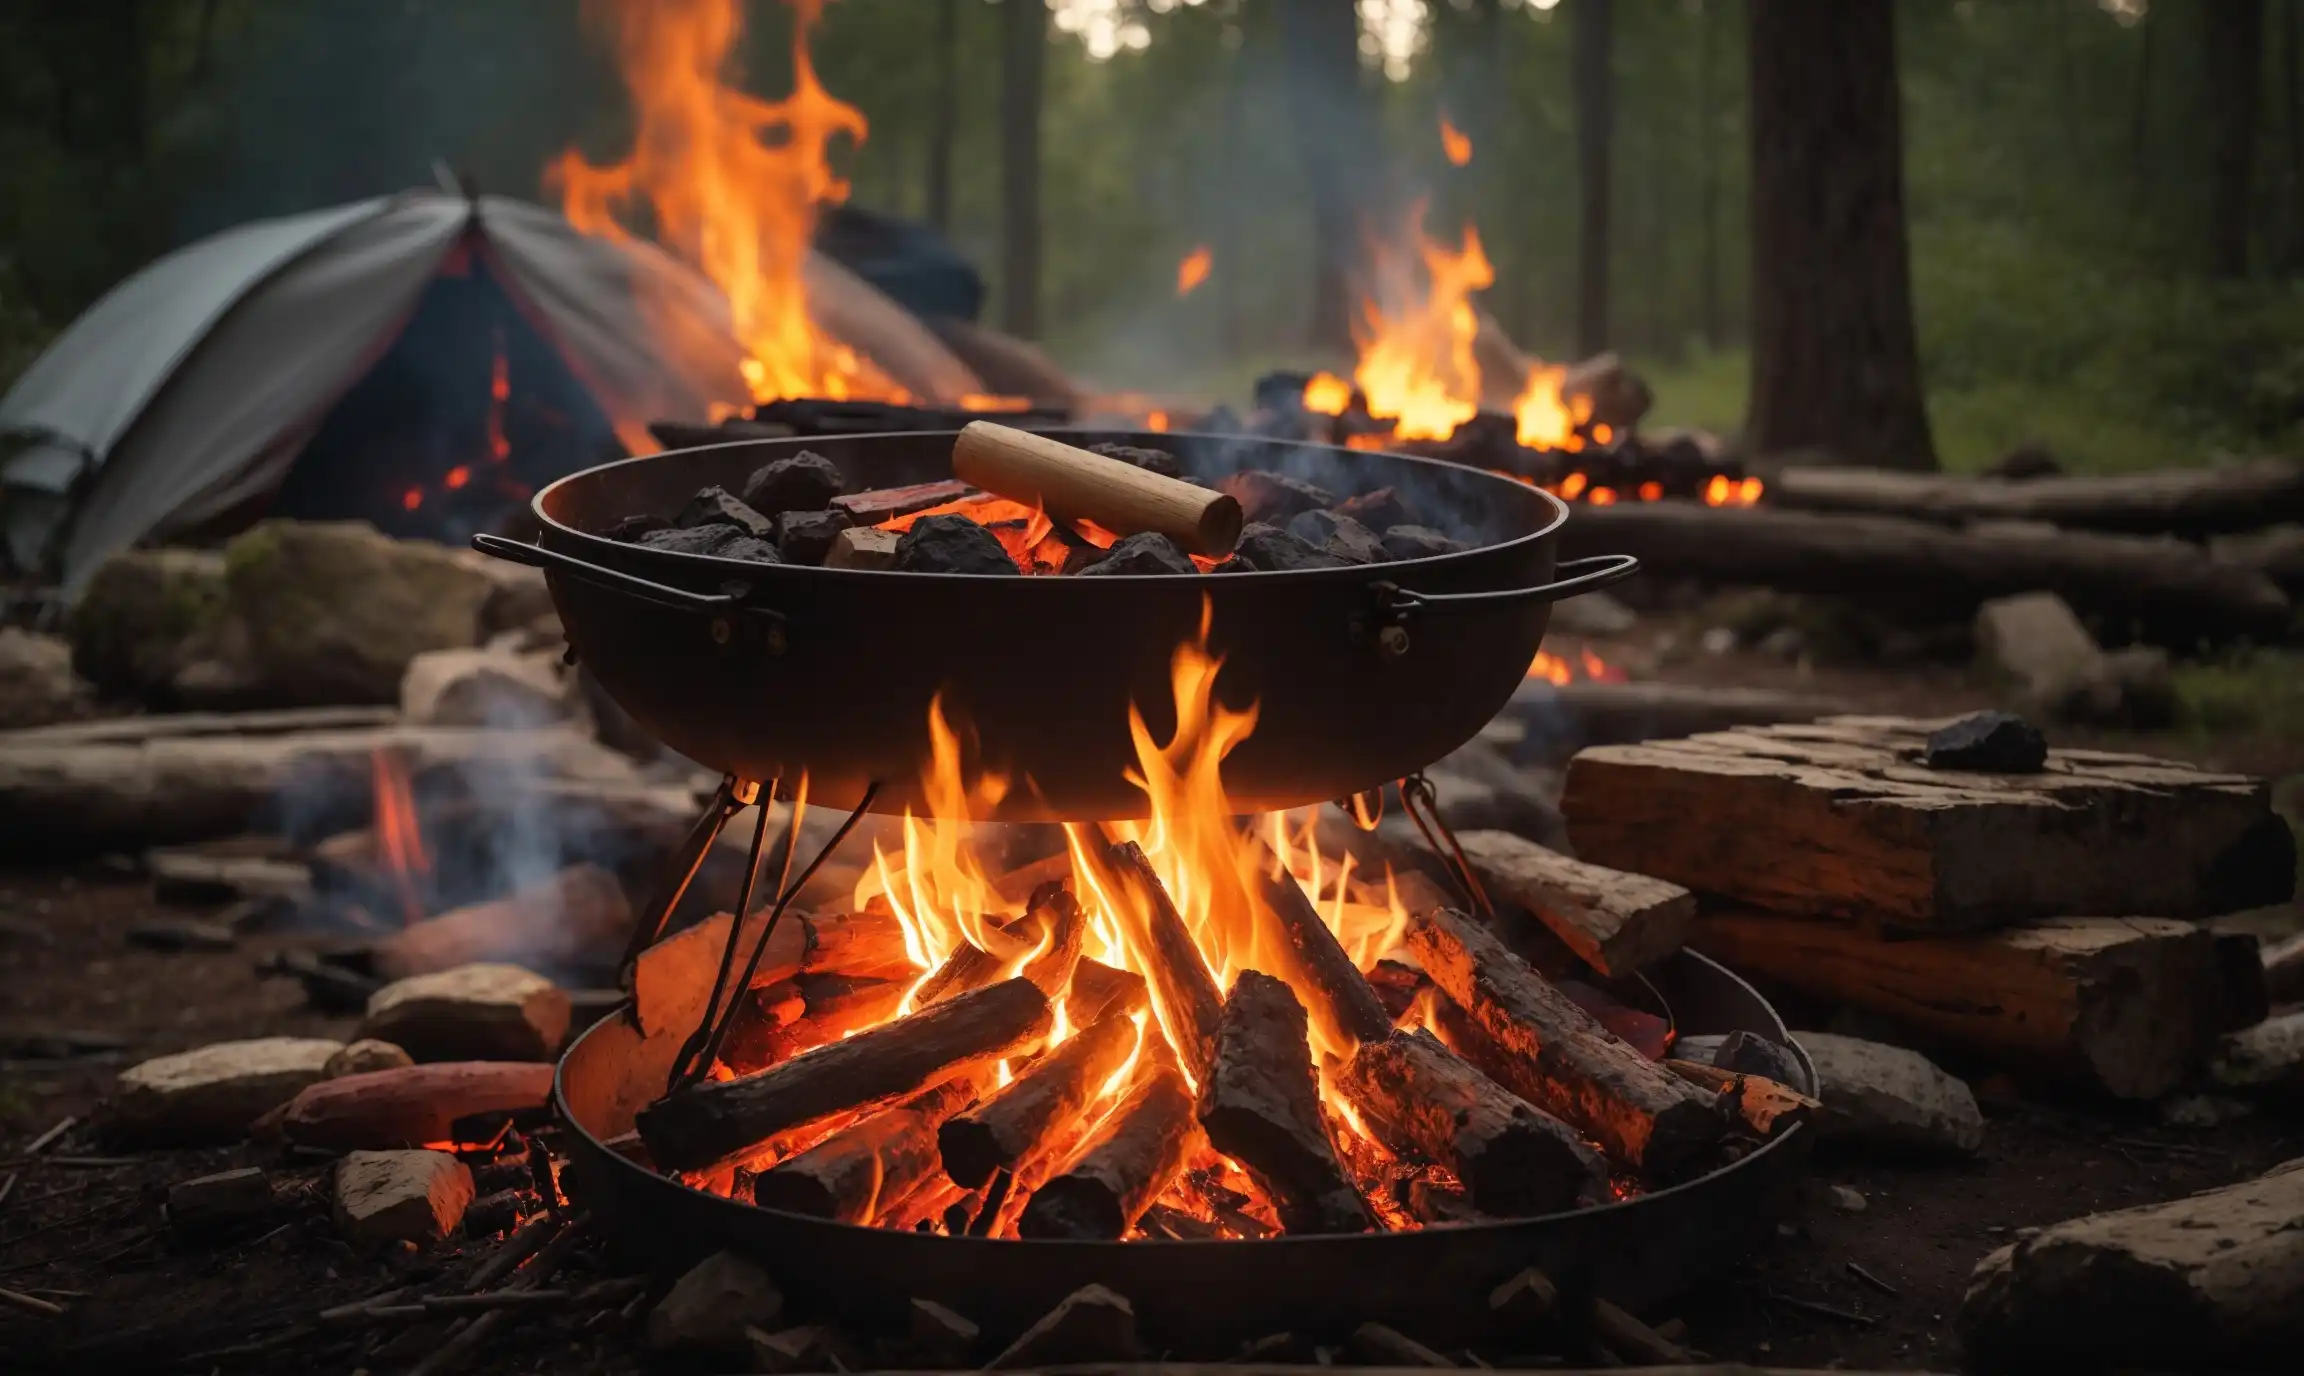 Open Flame vs Hot Coals